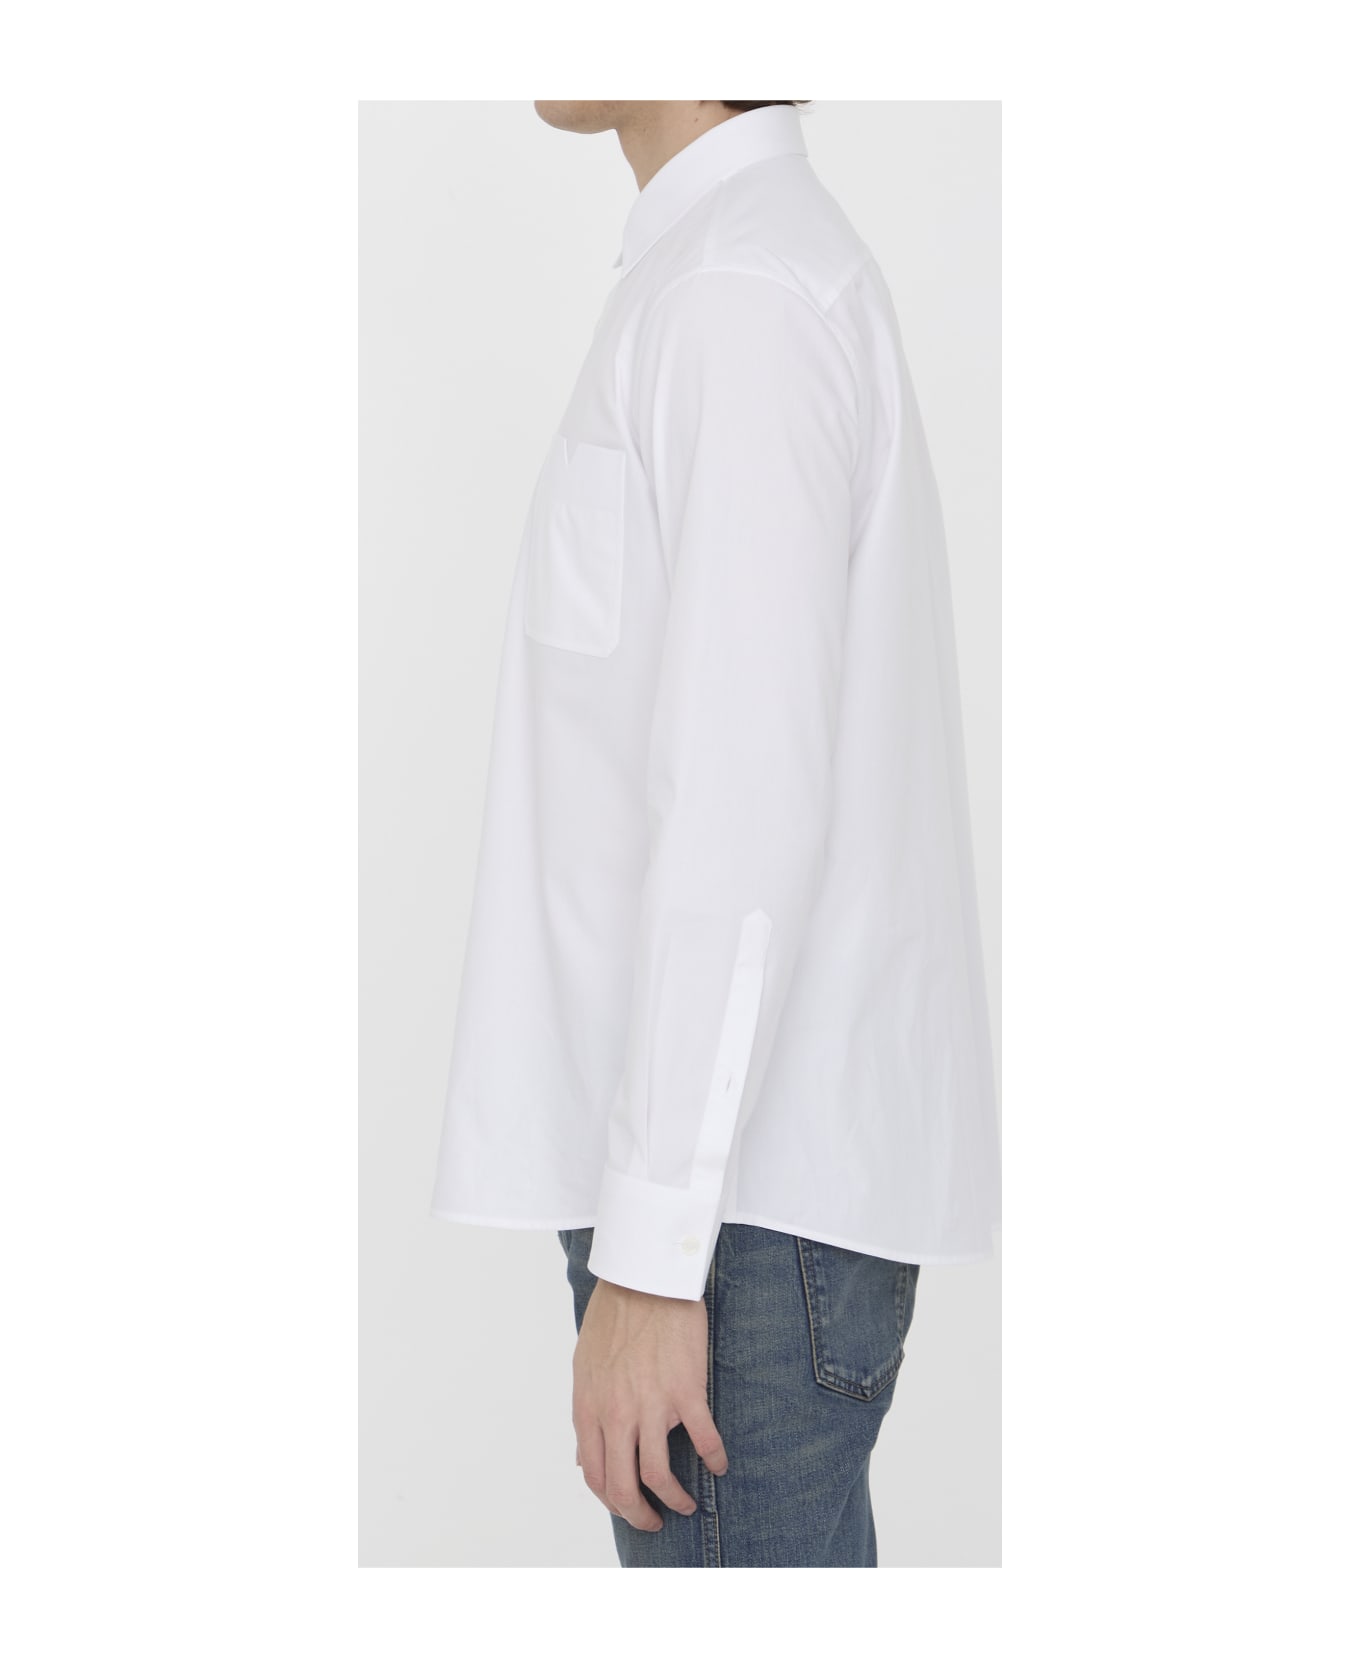 Valentino Garavani Cotton Shirt - WHITE シャツ